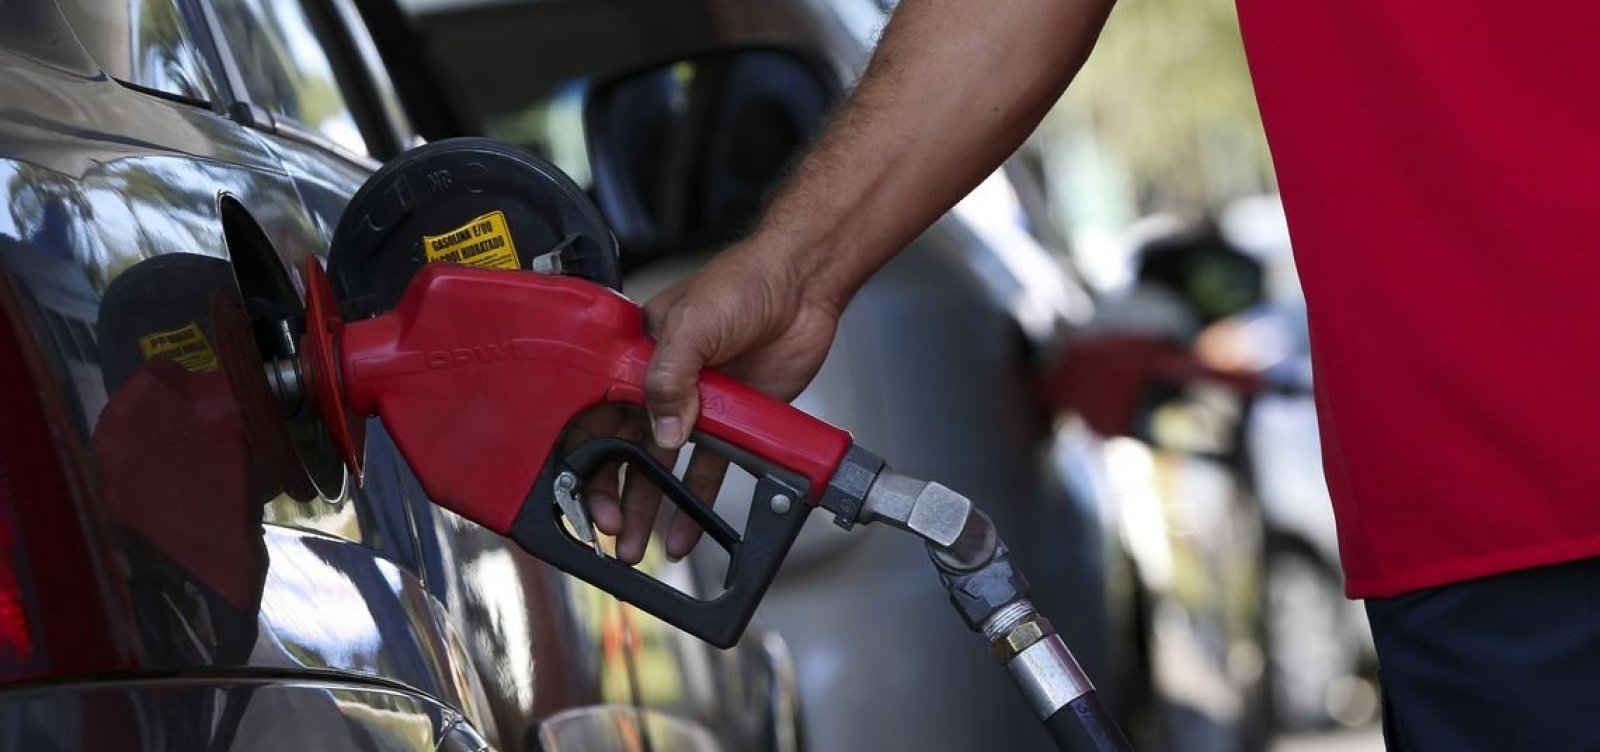 Preço da gasolina pode subir após aumento de pauta do ICMS, diz sindicato